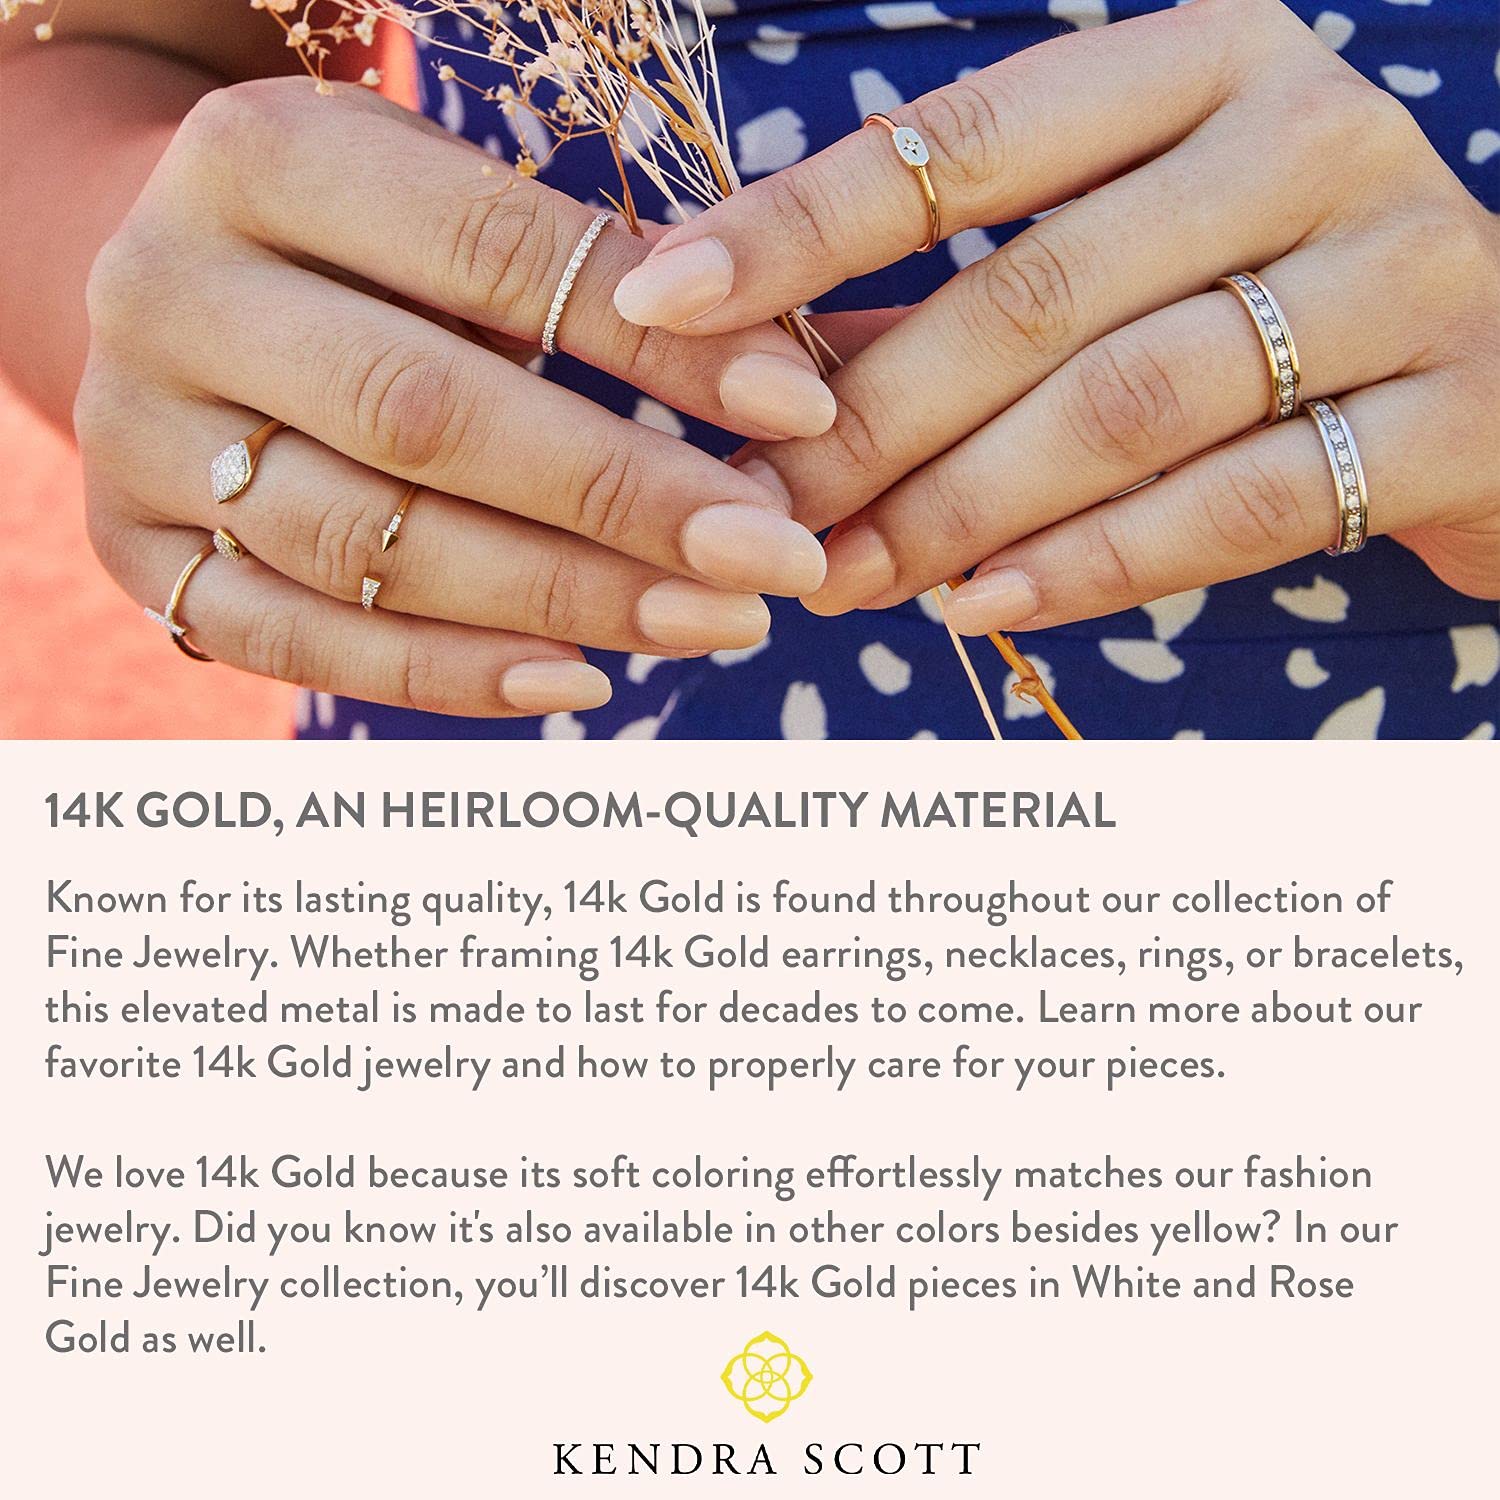 Kendra Scott White Diamond Cross Pendant Necklace in 14k Gold, Fine Jewelry for Women